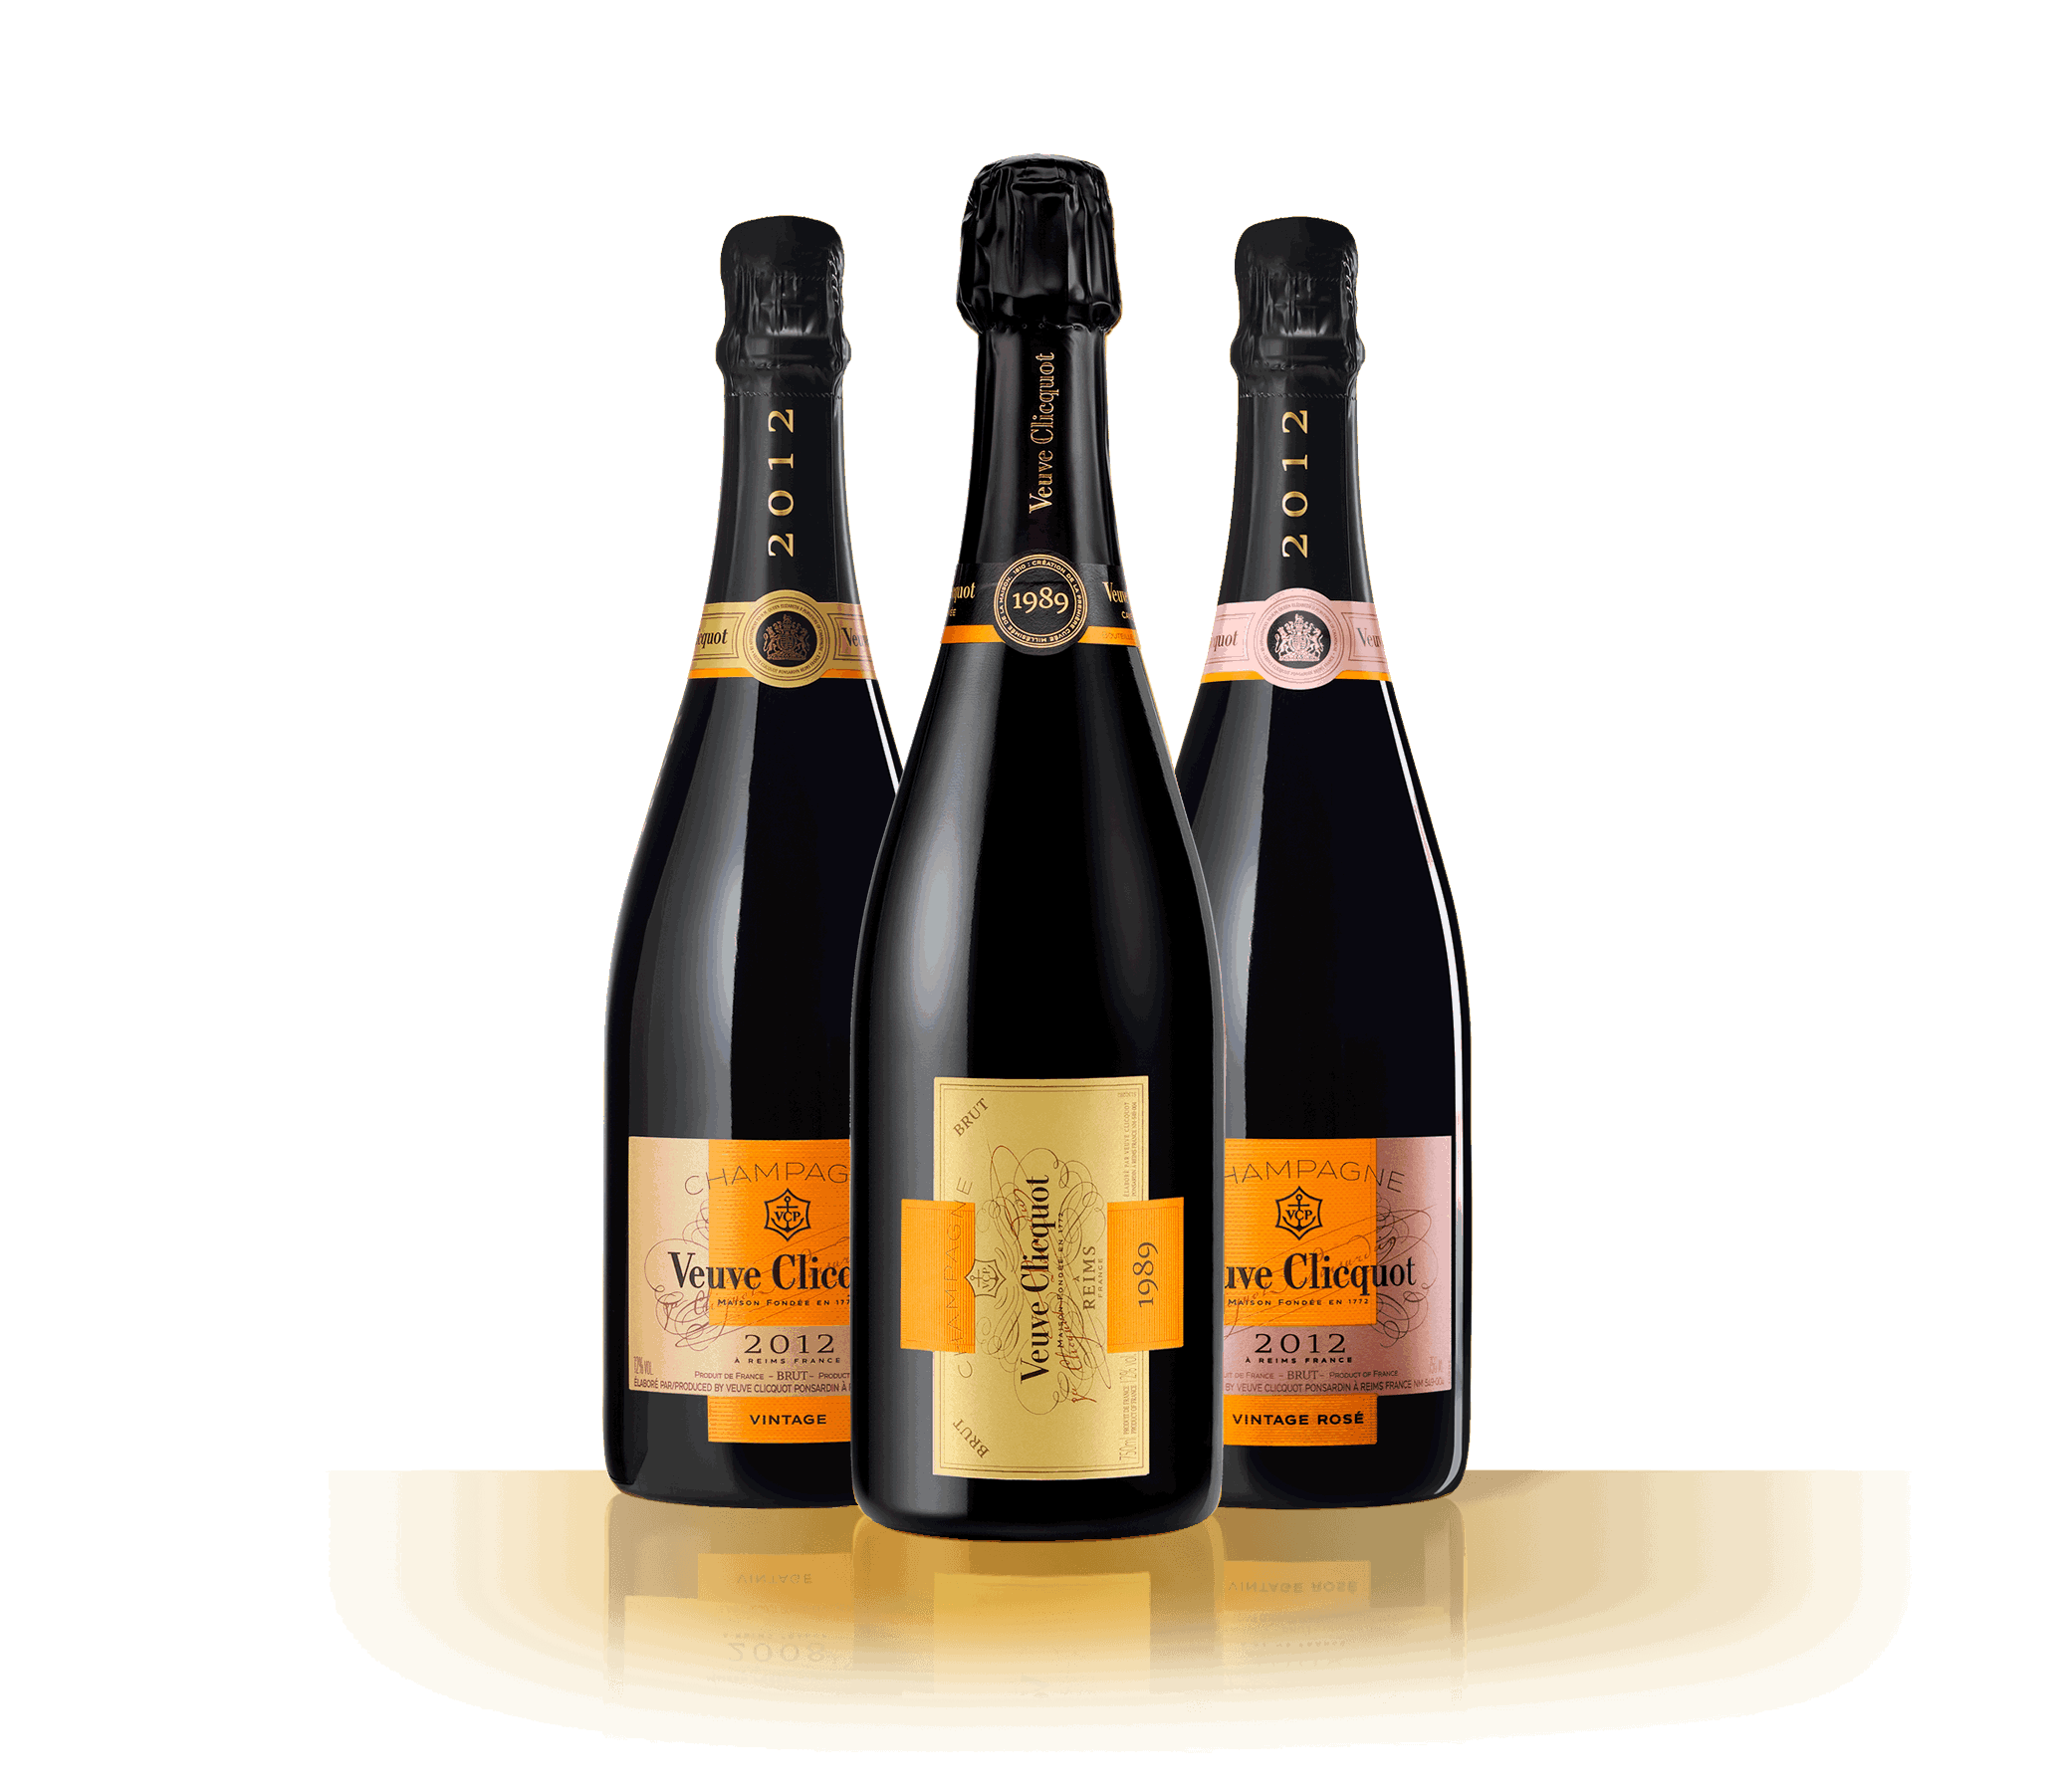 Garrafas do Champagne Veuve Clicquot Vintage